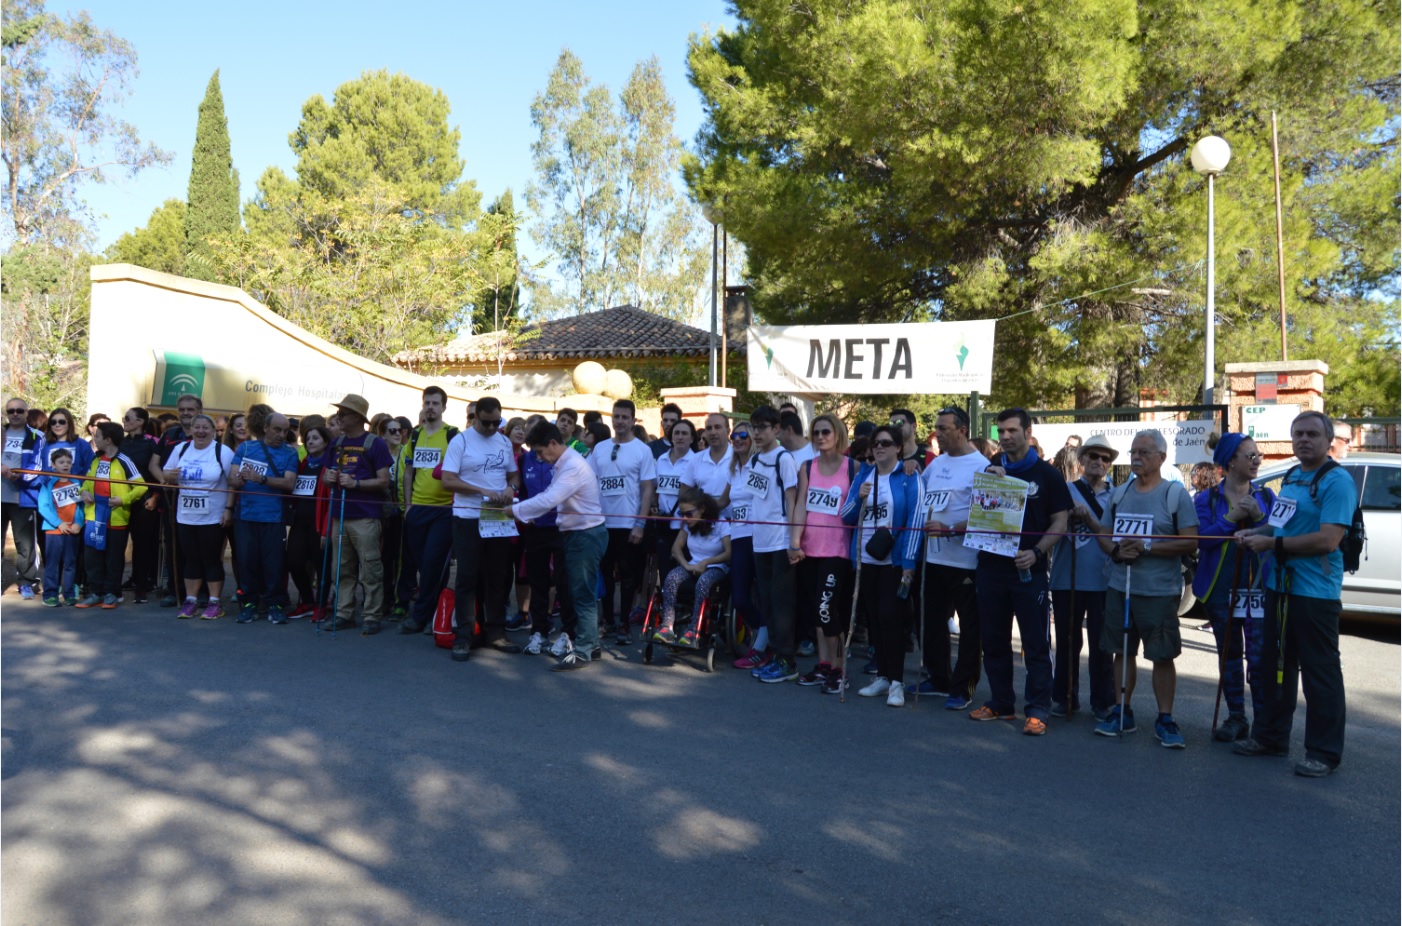 Los jiennenses apuestan por la II Ruta de senderismo solidaria “Salud y Paz”